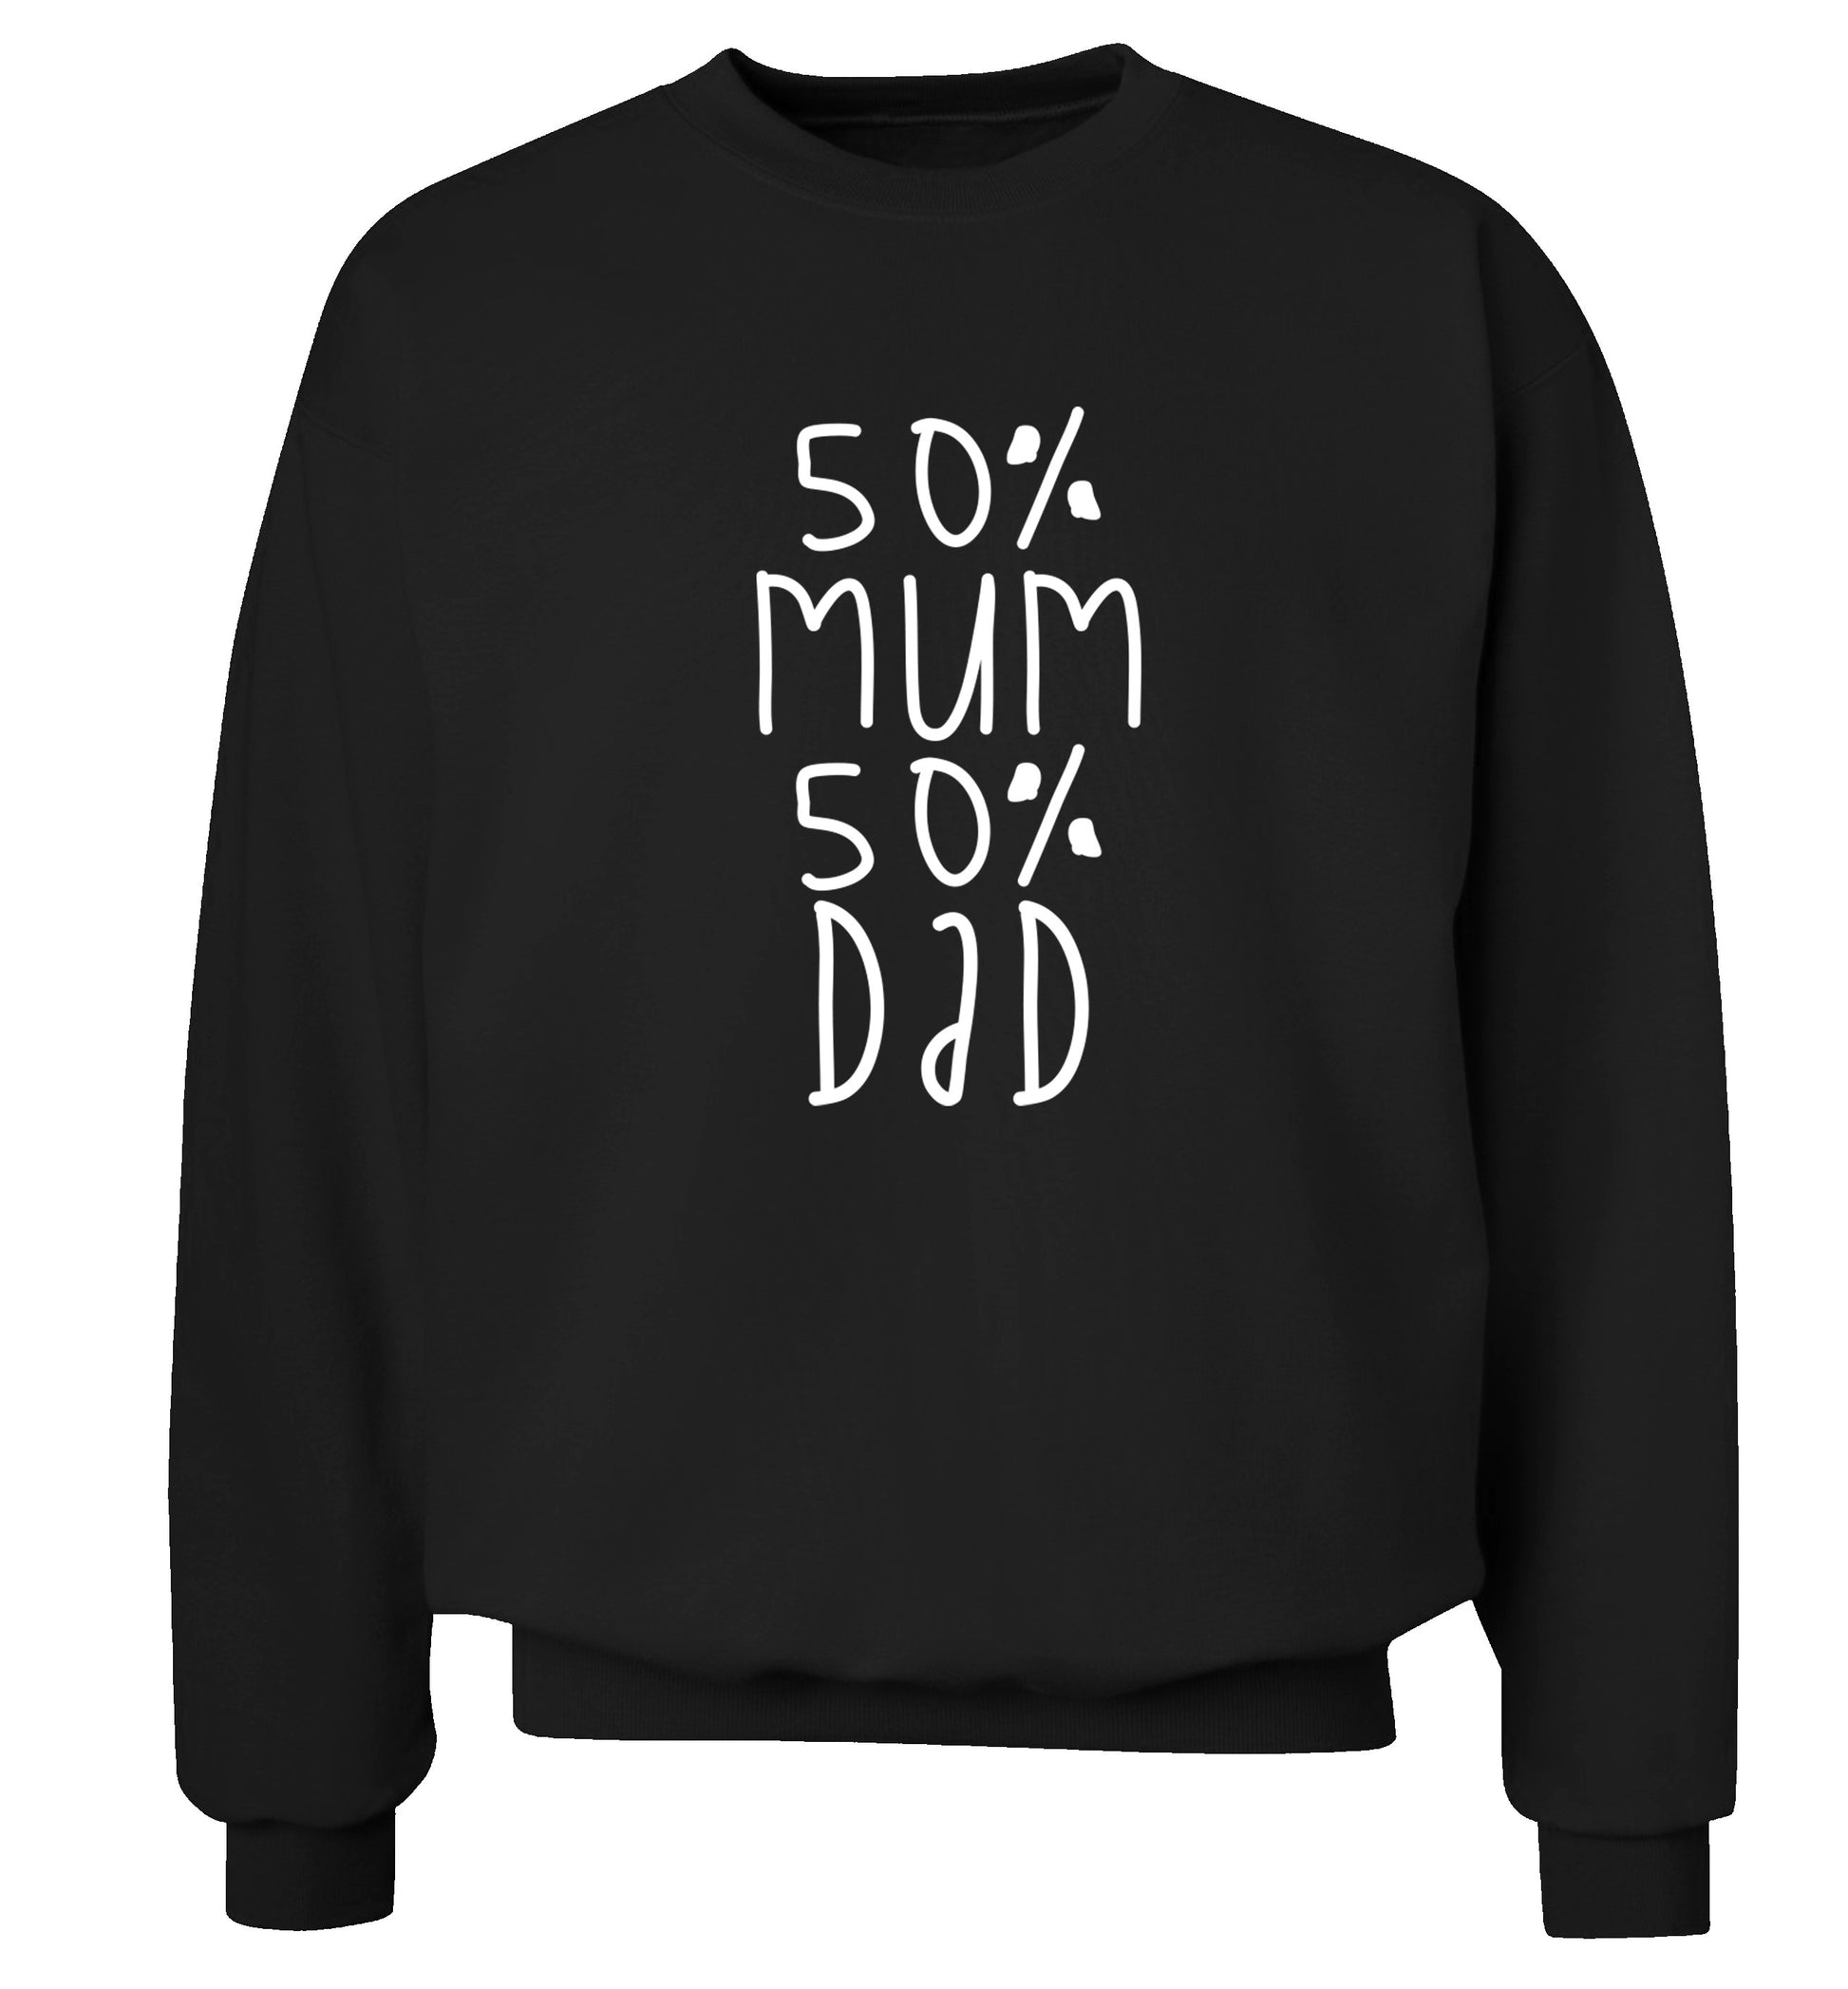 50% mum 50% dad Adult's unisex black Sweater 2XL